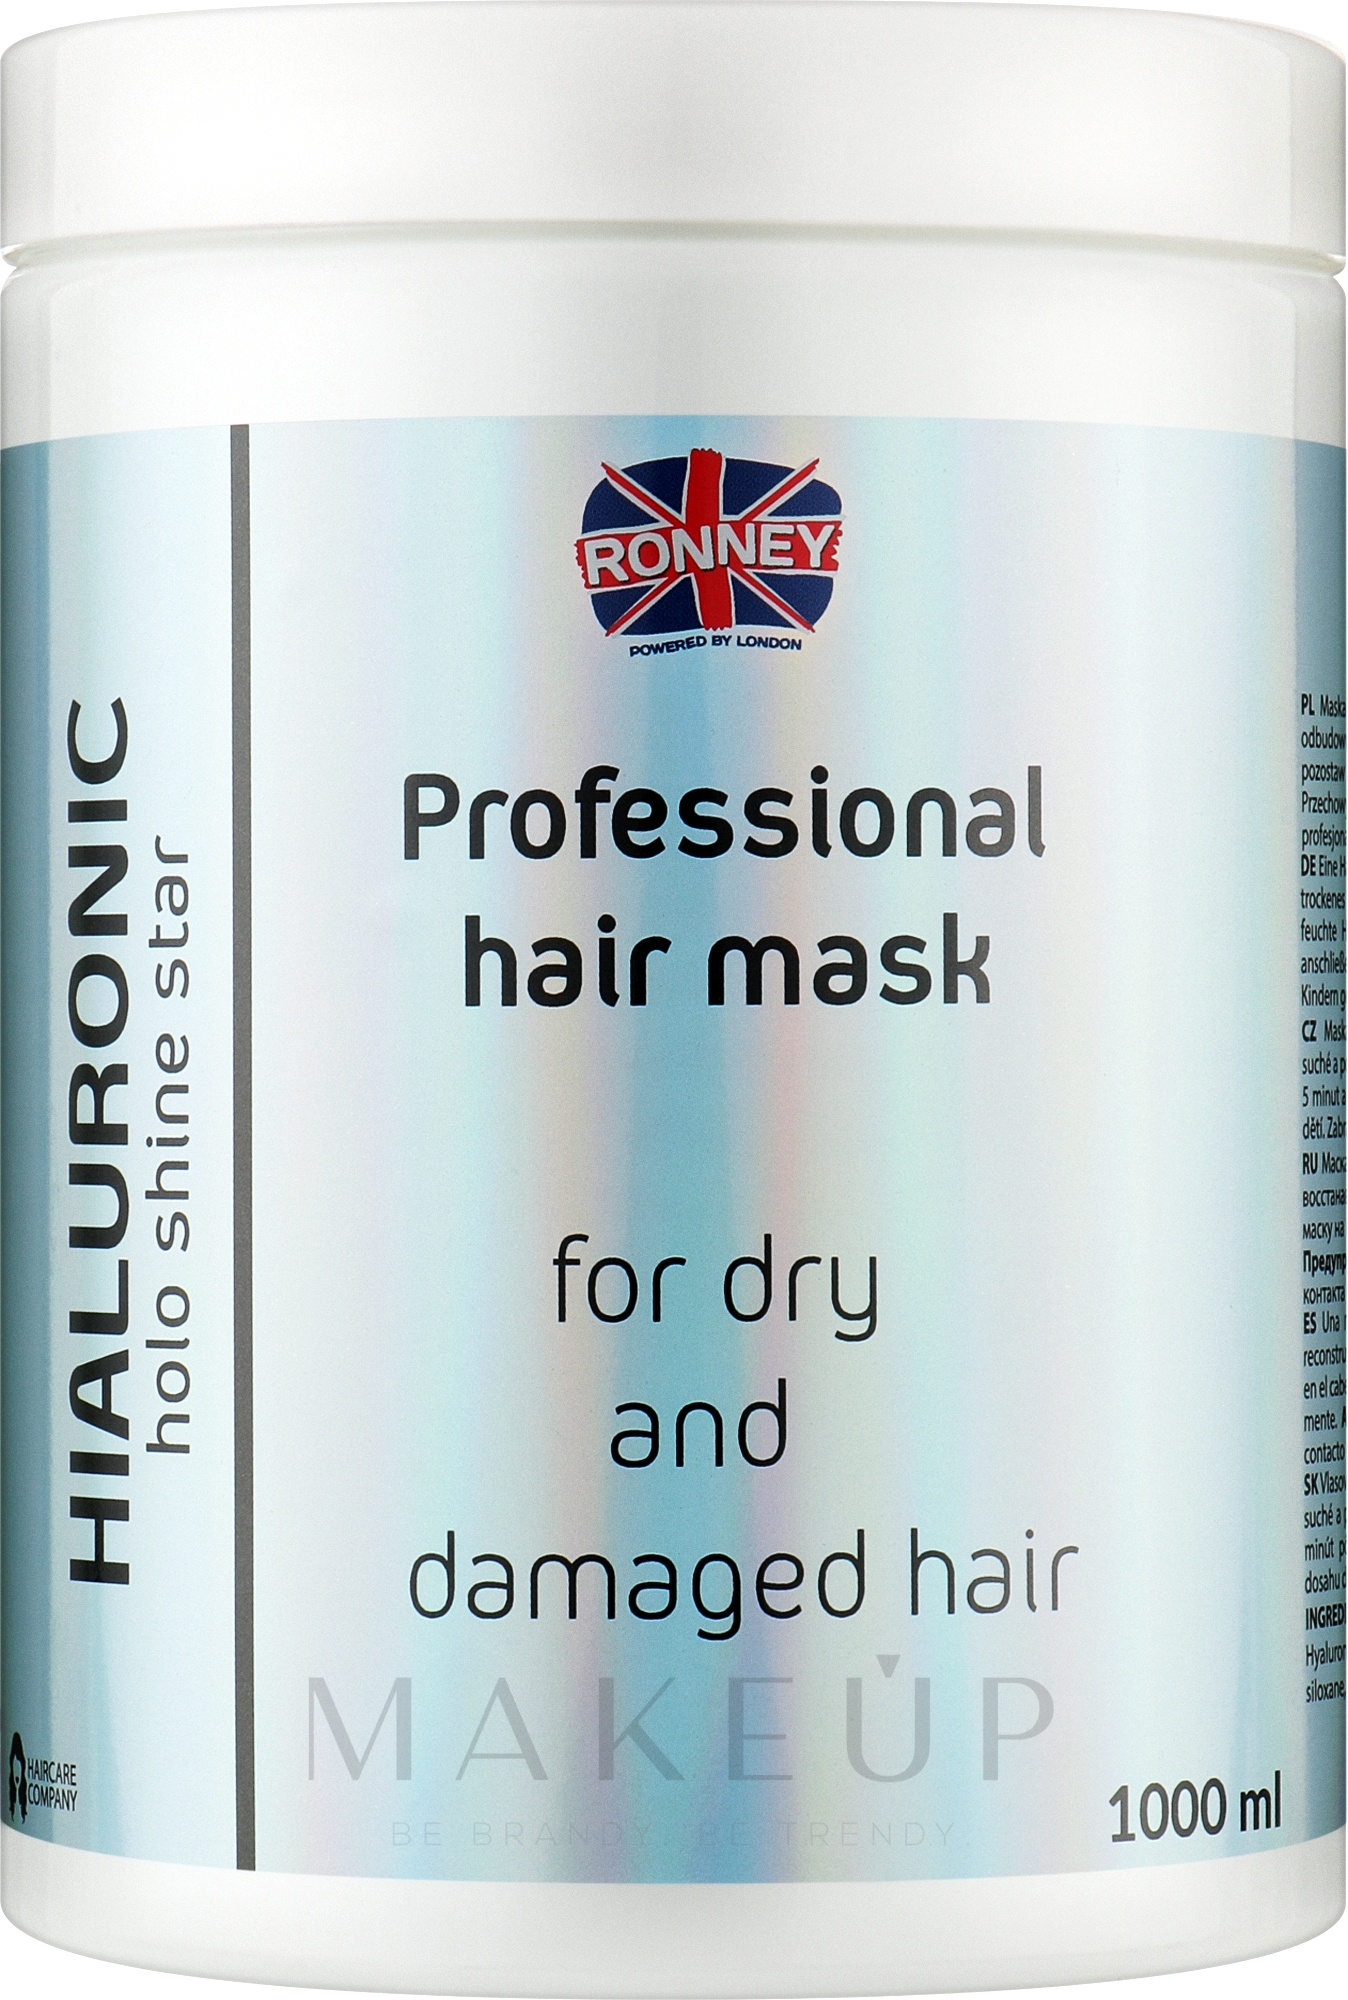 Feuchtigkeitsspendende Maske für trockenes und geschädigtes Haar mit Hyaluronsäure - Ronney Professional Holo Shine Star Hialuronic Mask — Bild 1000 ml